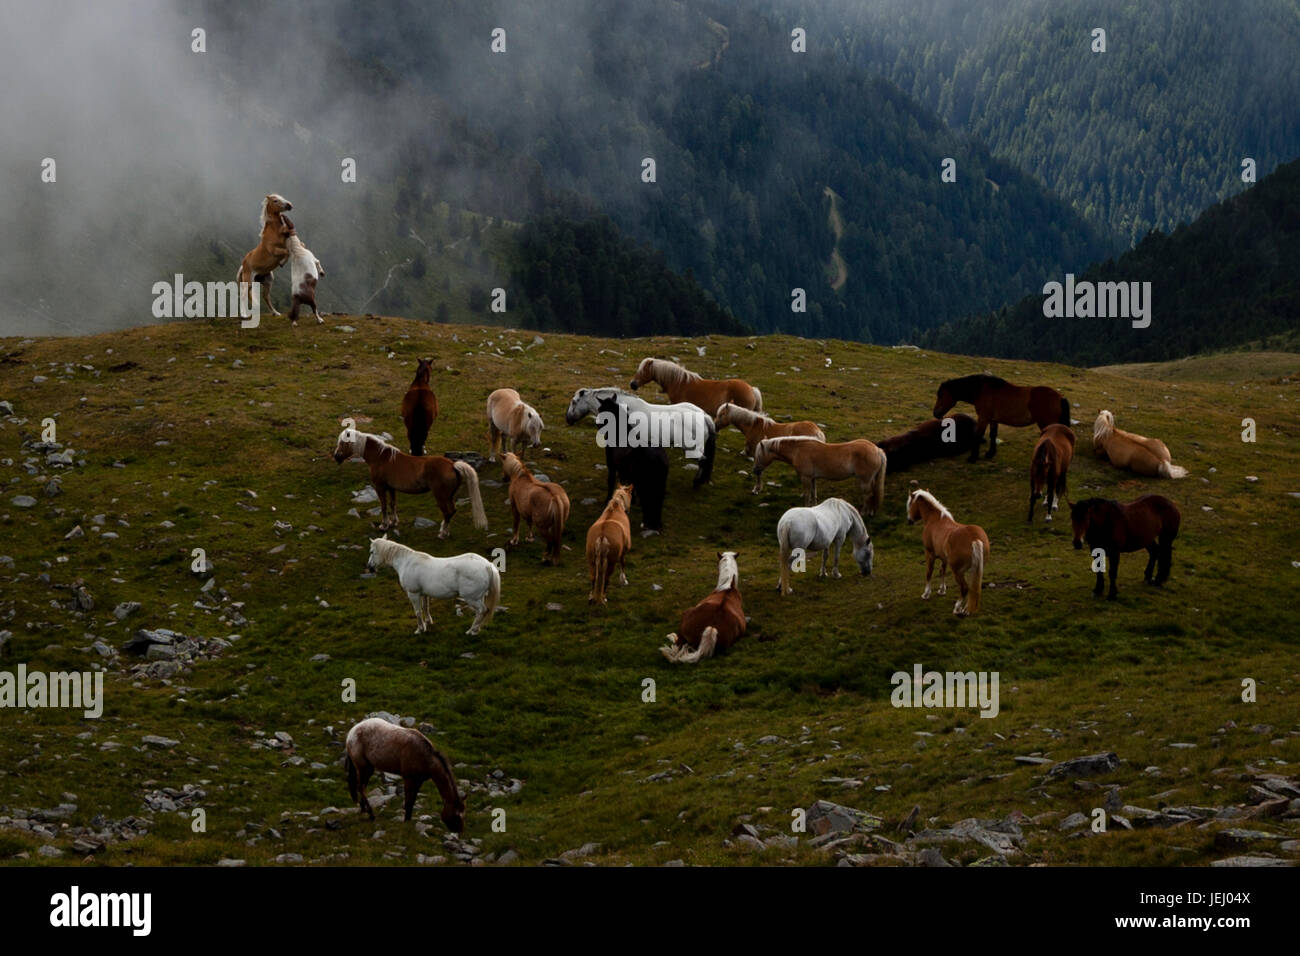 Aufzucht im Abgrund. Zwei Pferde kämpfen in der Nähe von Herde von Pferden auf einer Wiese in den Alpen Stockfoto